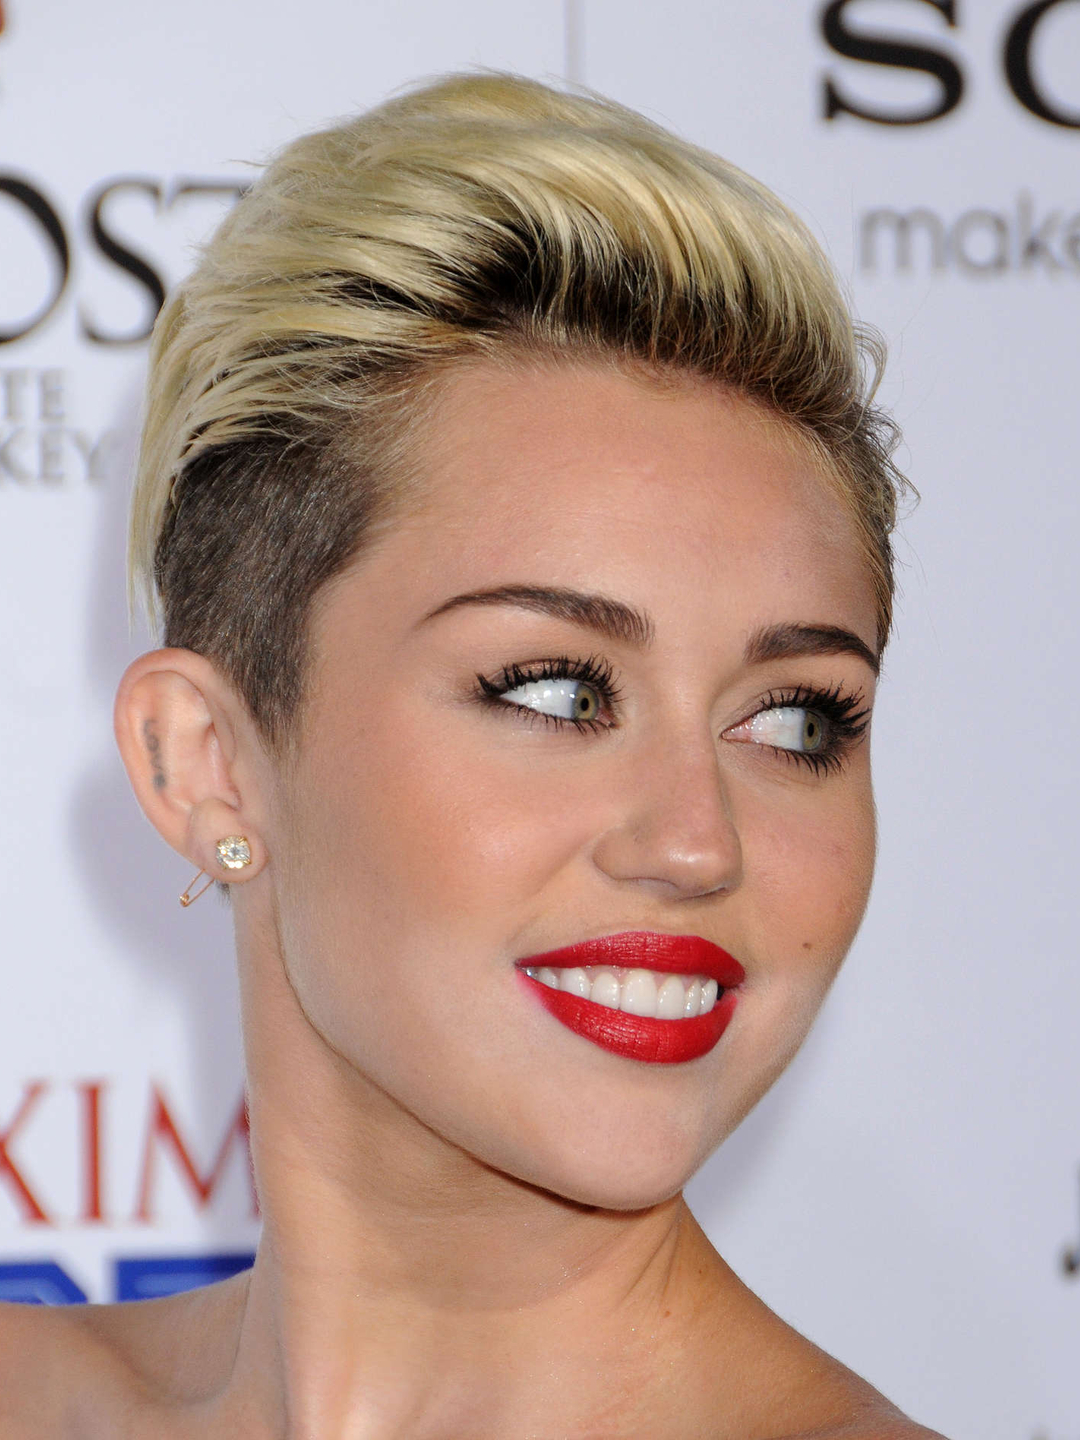 Miley Cyrus age